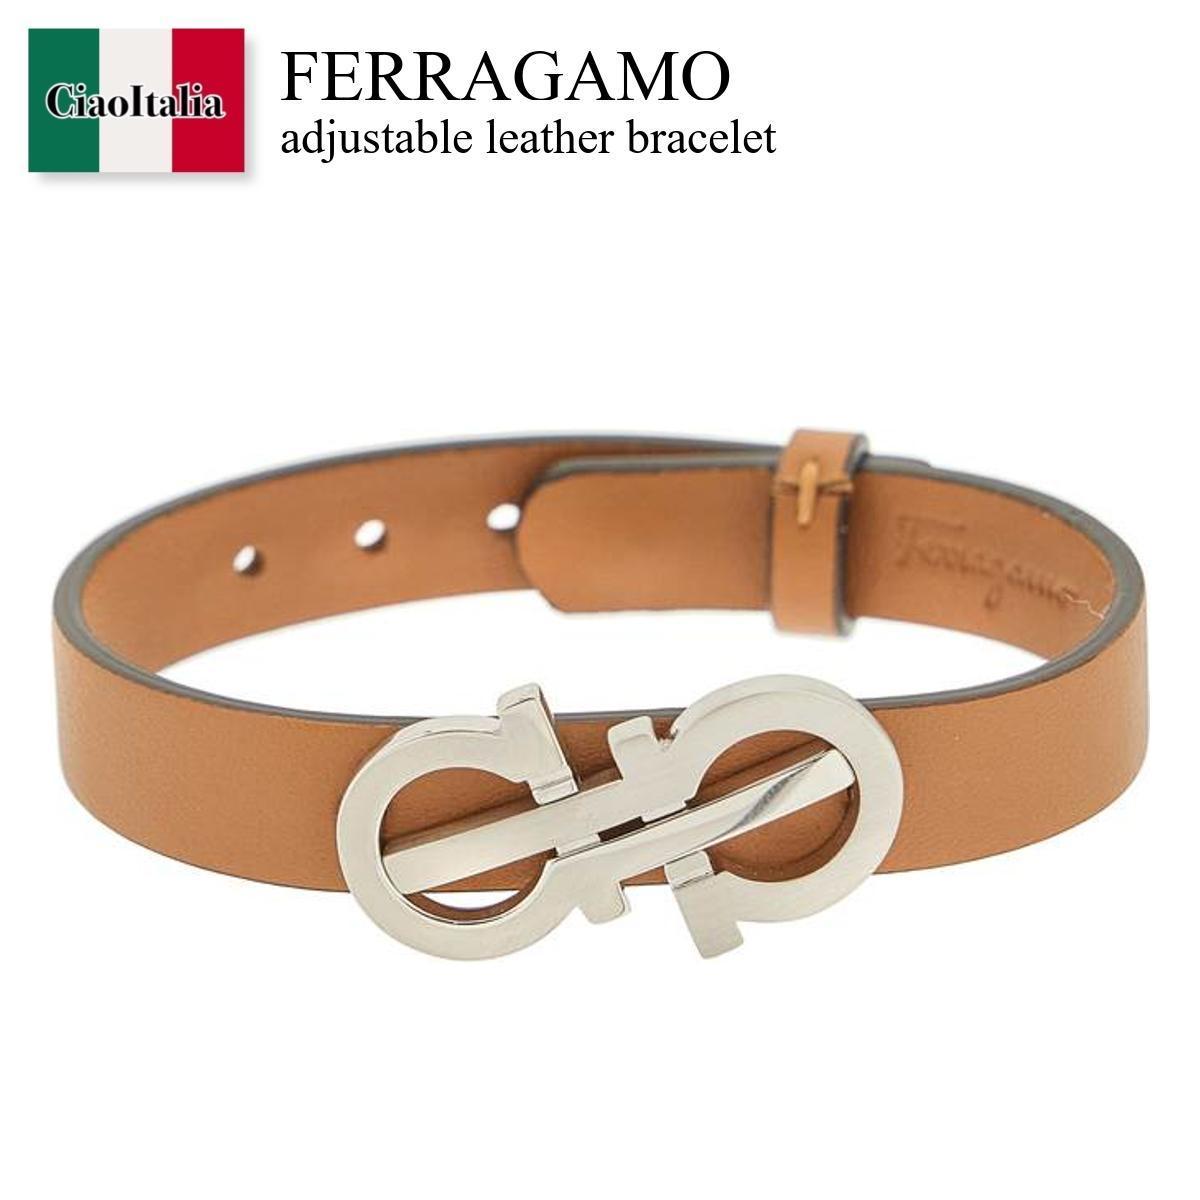 フェラガモ / Ferragamo Adjustable Leather Bracelet / 7703150759323 / 7703150759323 005PC / 7703150759323005PC / ブレスレット / 「正規品補償」「VIP価格販売」「お買い物サポート」